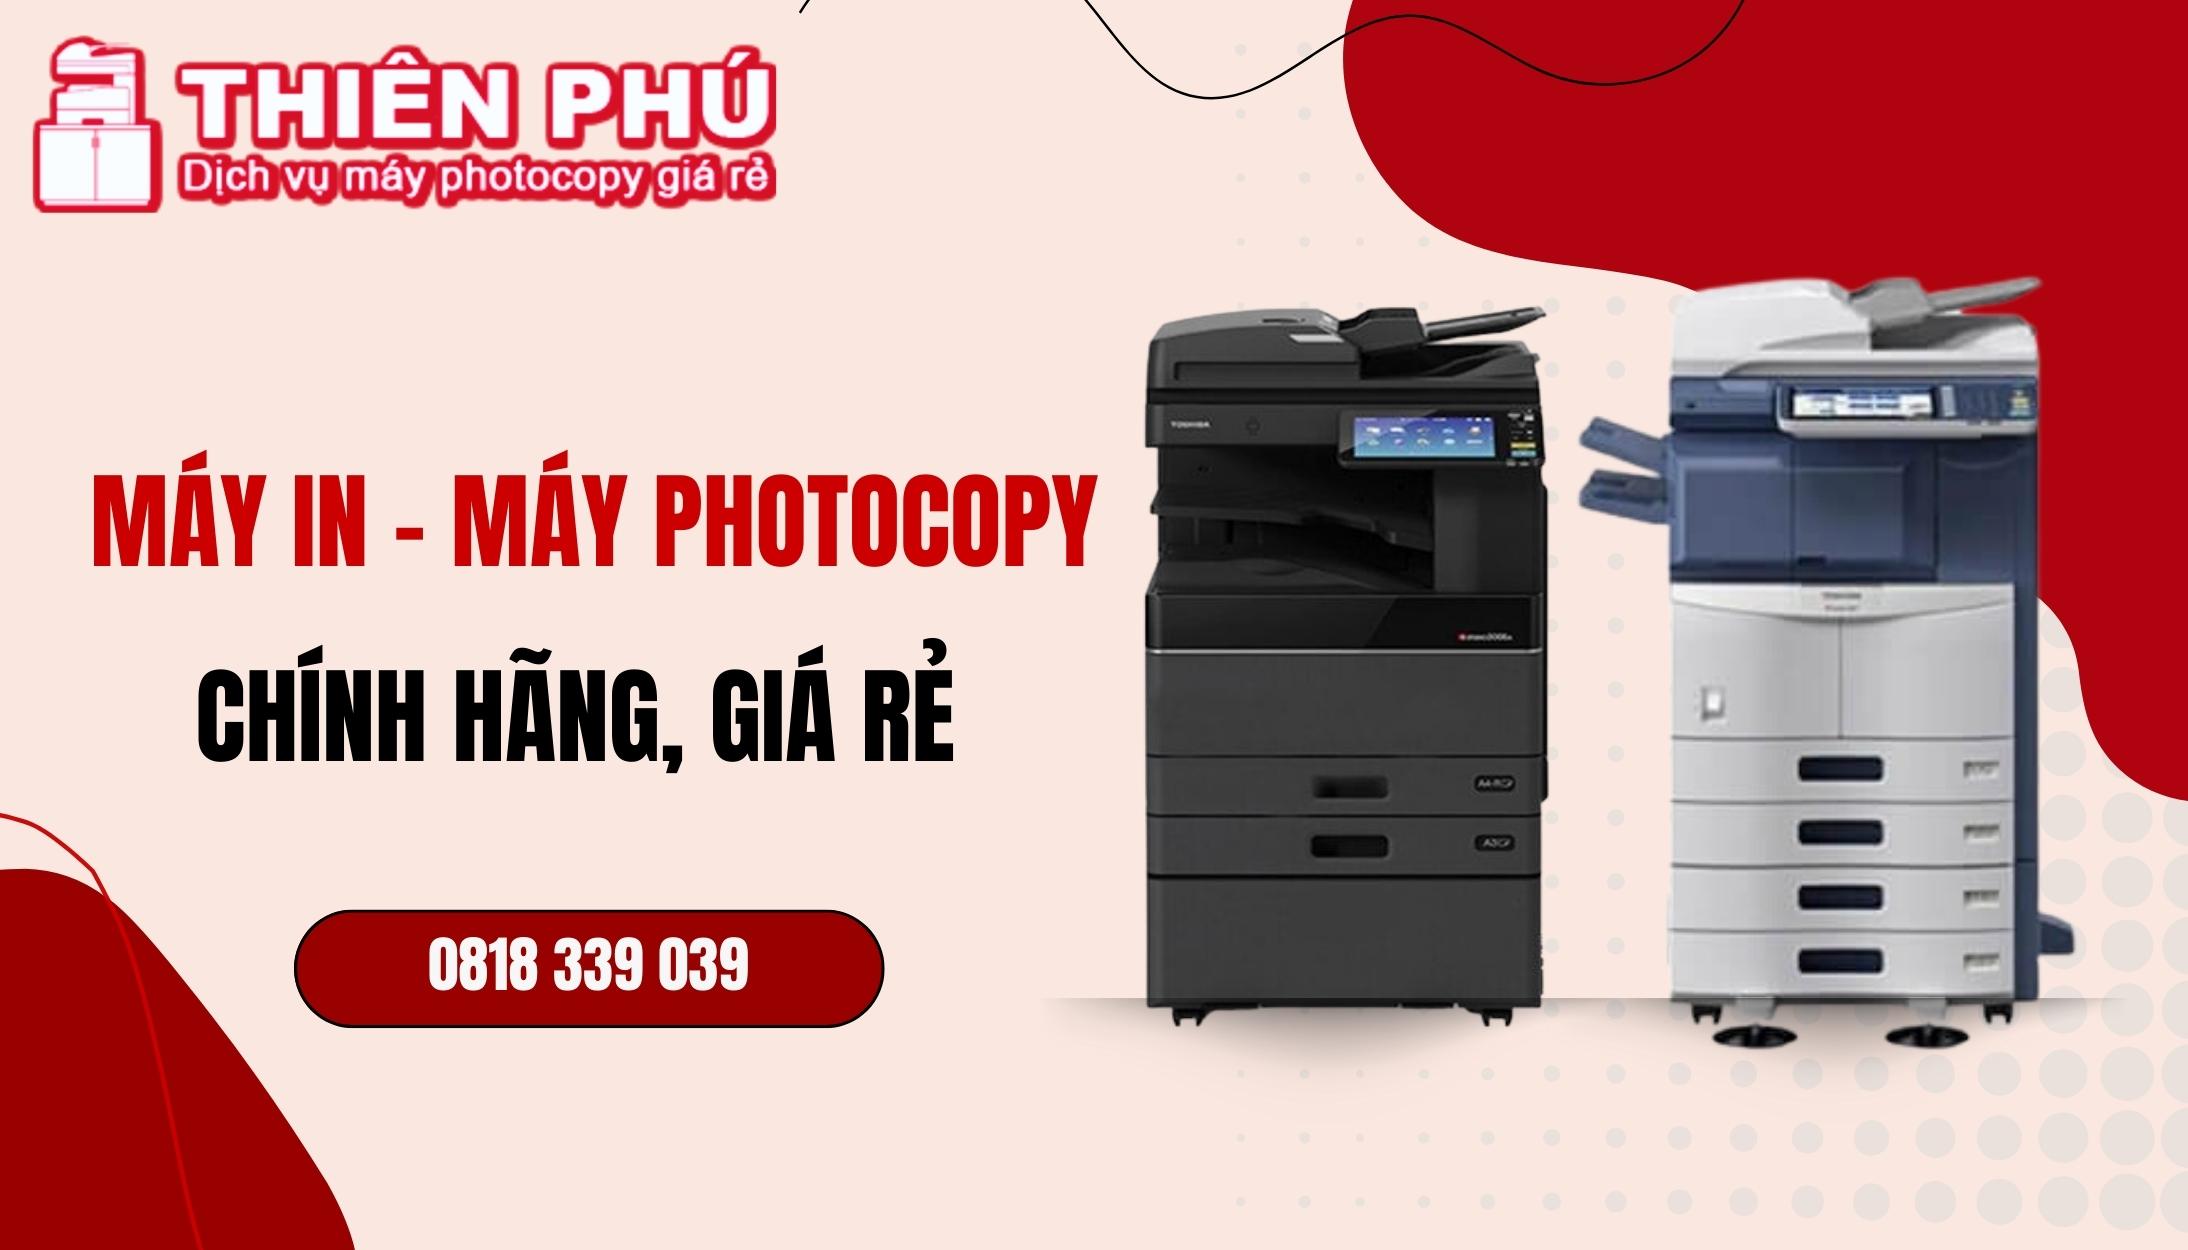 Thiên Phú - Địa chỉ mua máy in, máy photocopy chính hãng